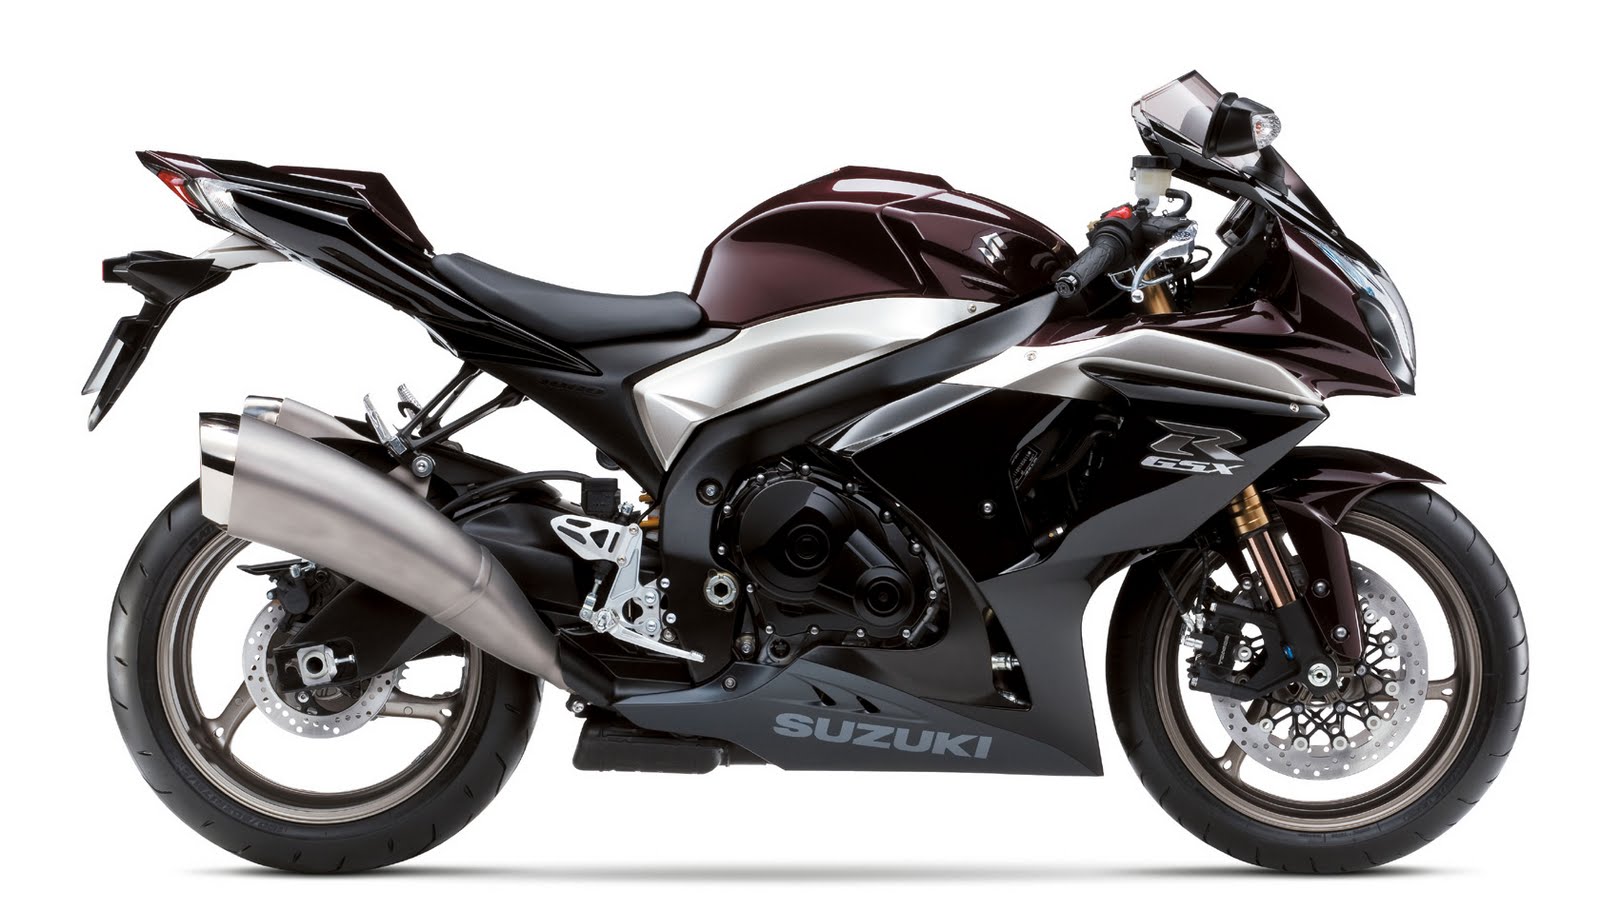 2009 Suzuki GSX R1000 Honda Motorcycles Trend Mode Motorbike